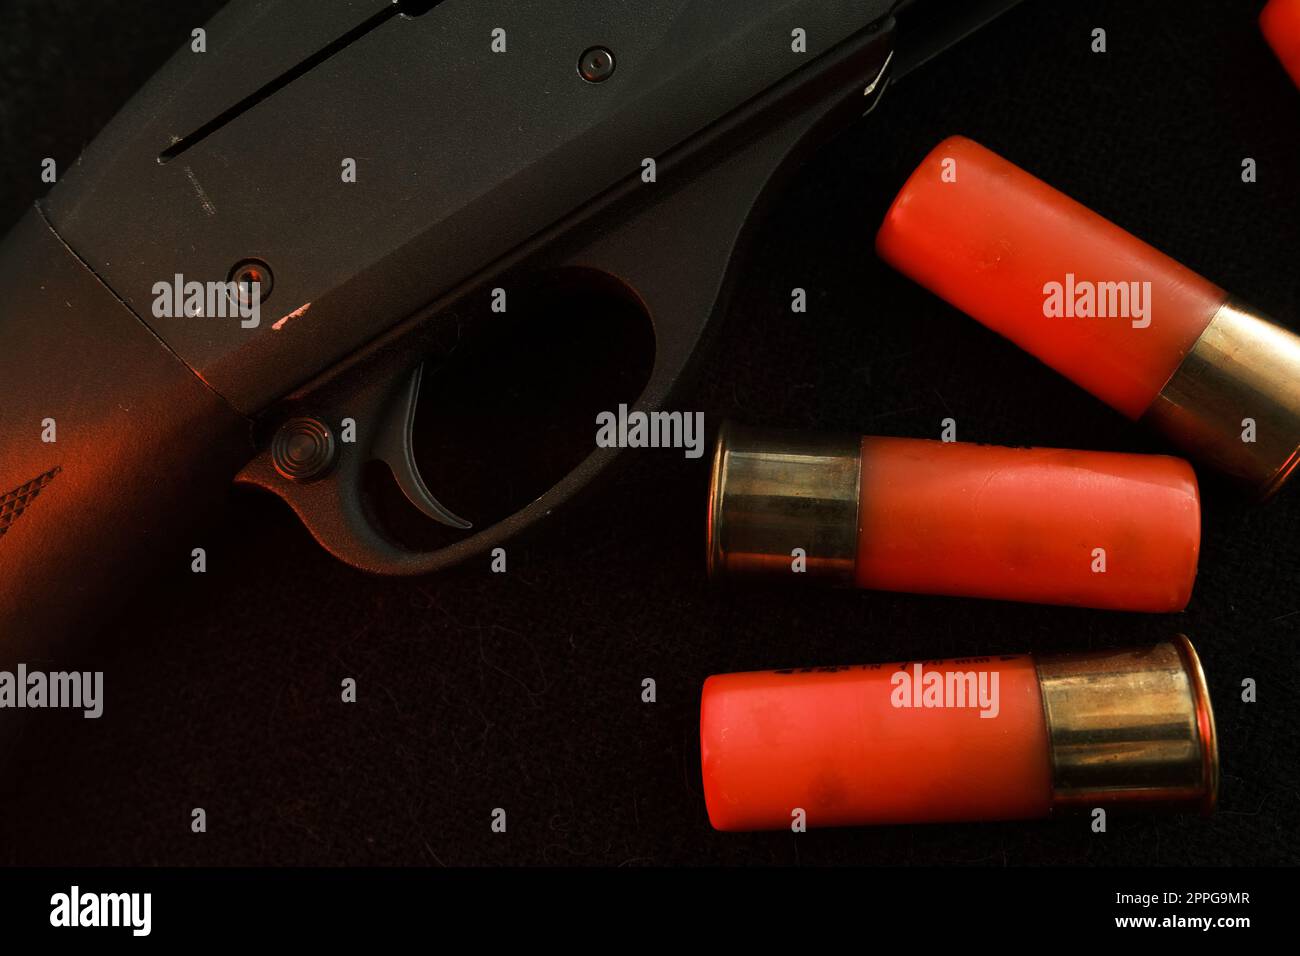 Grilletto di un fucile su sfondo nero con fulmine rosso con proiettili Shotgun su una superficie nera. Munizioni per armi a foro liscio da 12 gauge. Caccia alle munizioni. Sfondo scuro. Foto Stock